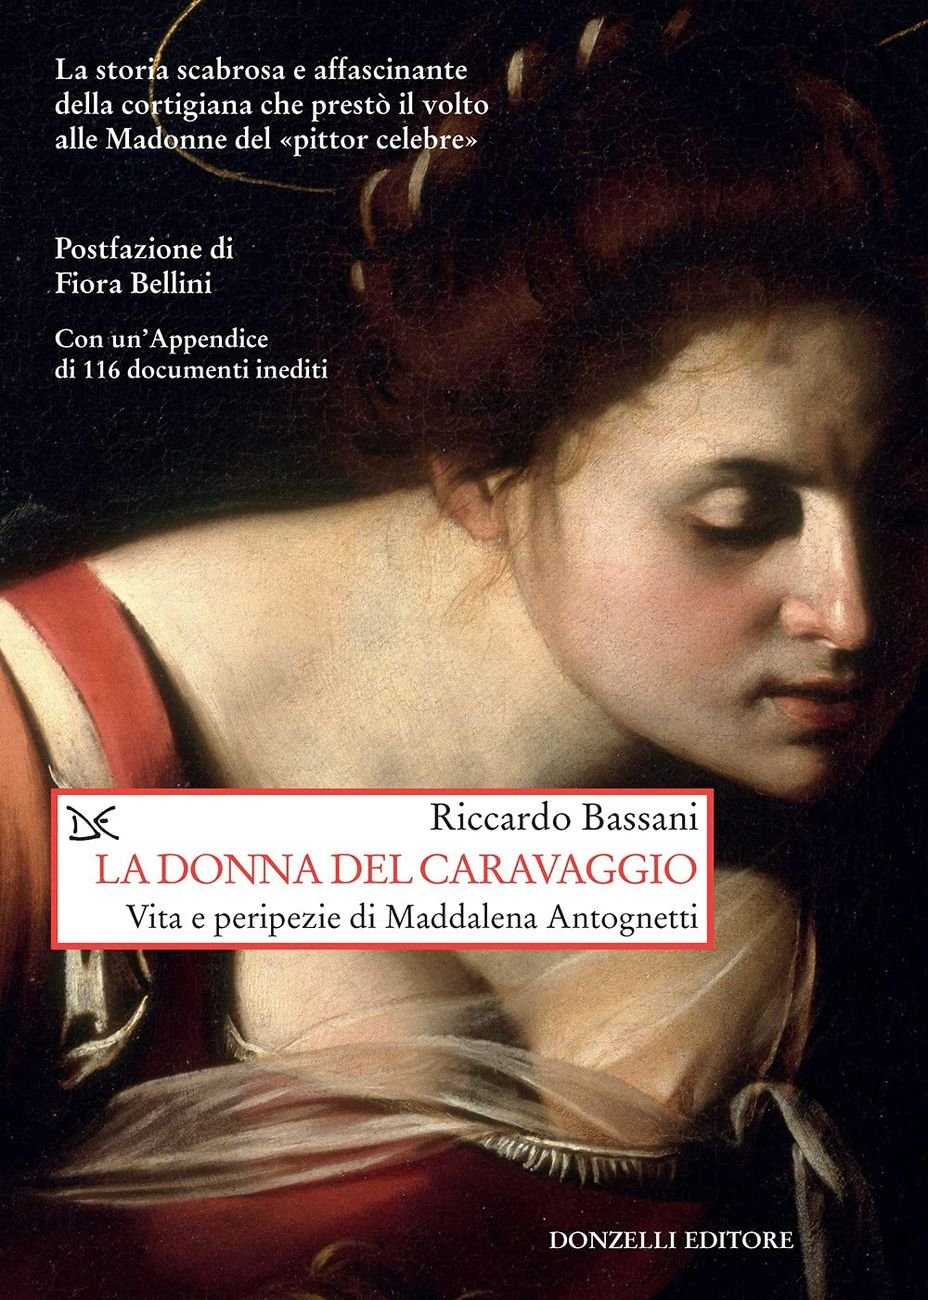 Riccardo Bassani ‒ La donna del Caravaggio (Donzelli Editore, Roma 2021)